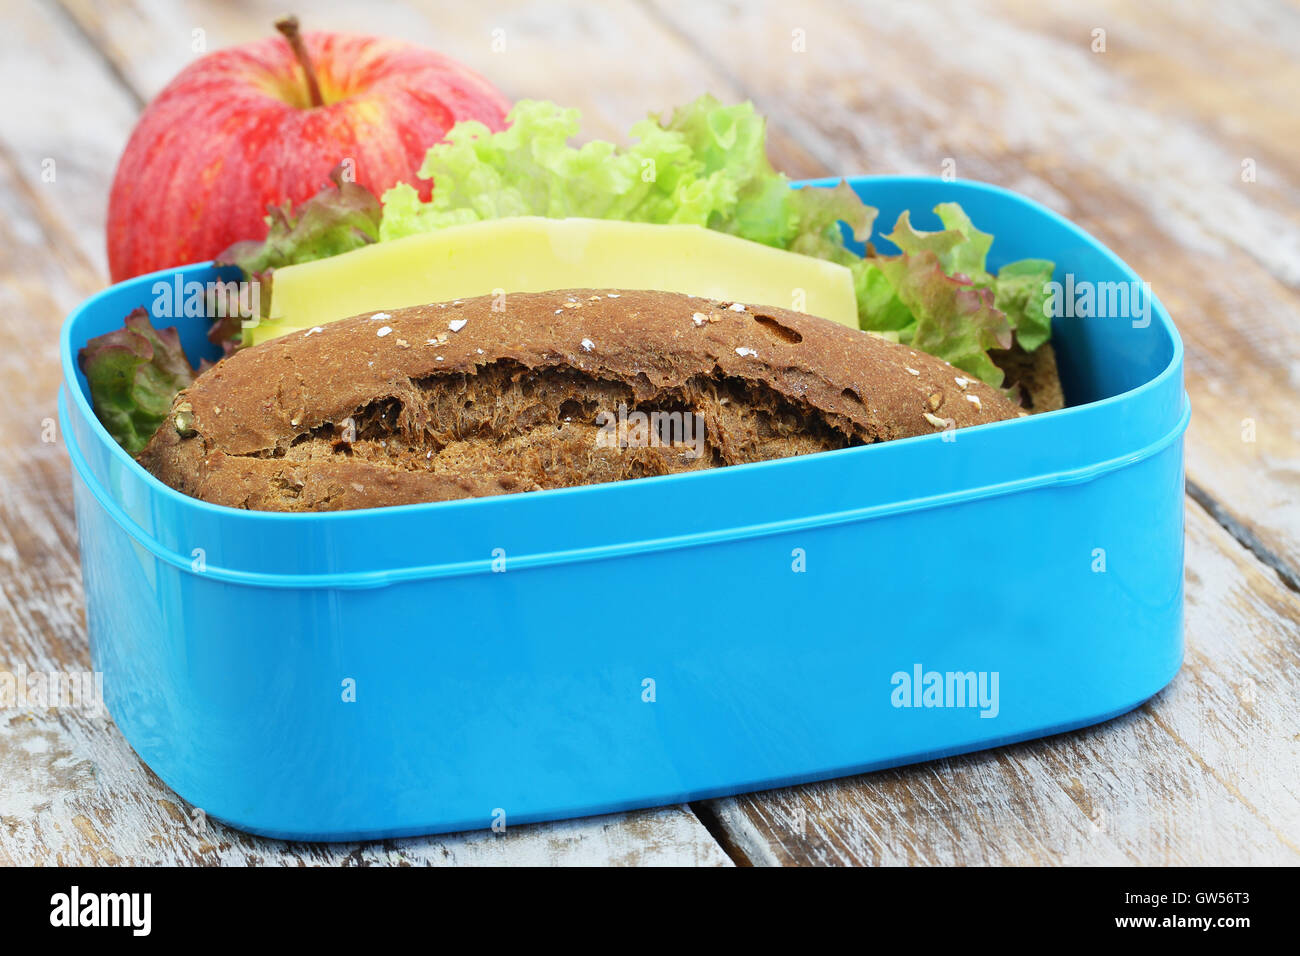 Lunch-Box mit braunen Käse-Sandwich und roter Apfel auf rustikalen Holzoberfläche verpackt Stockfoto